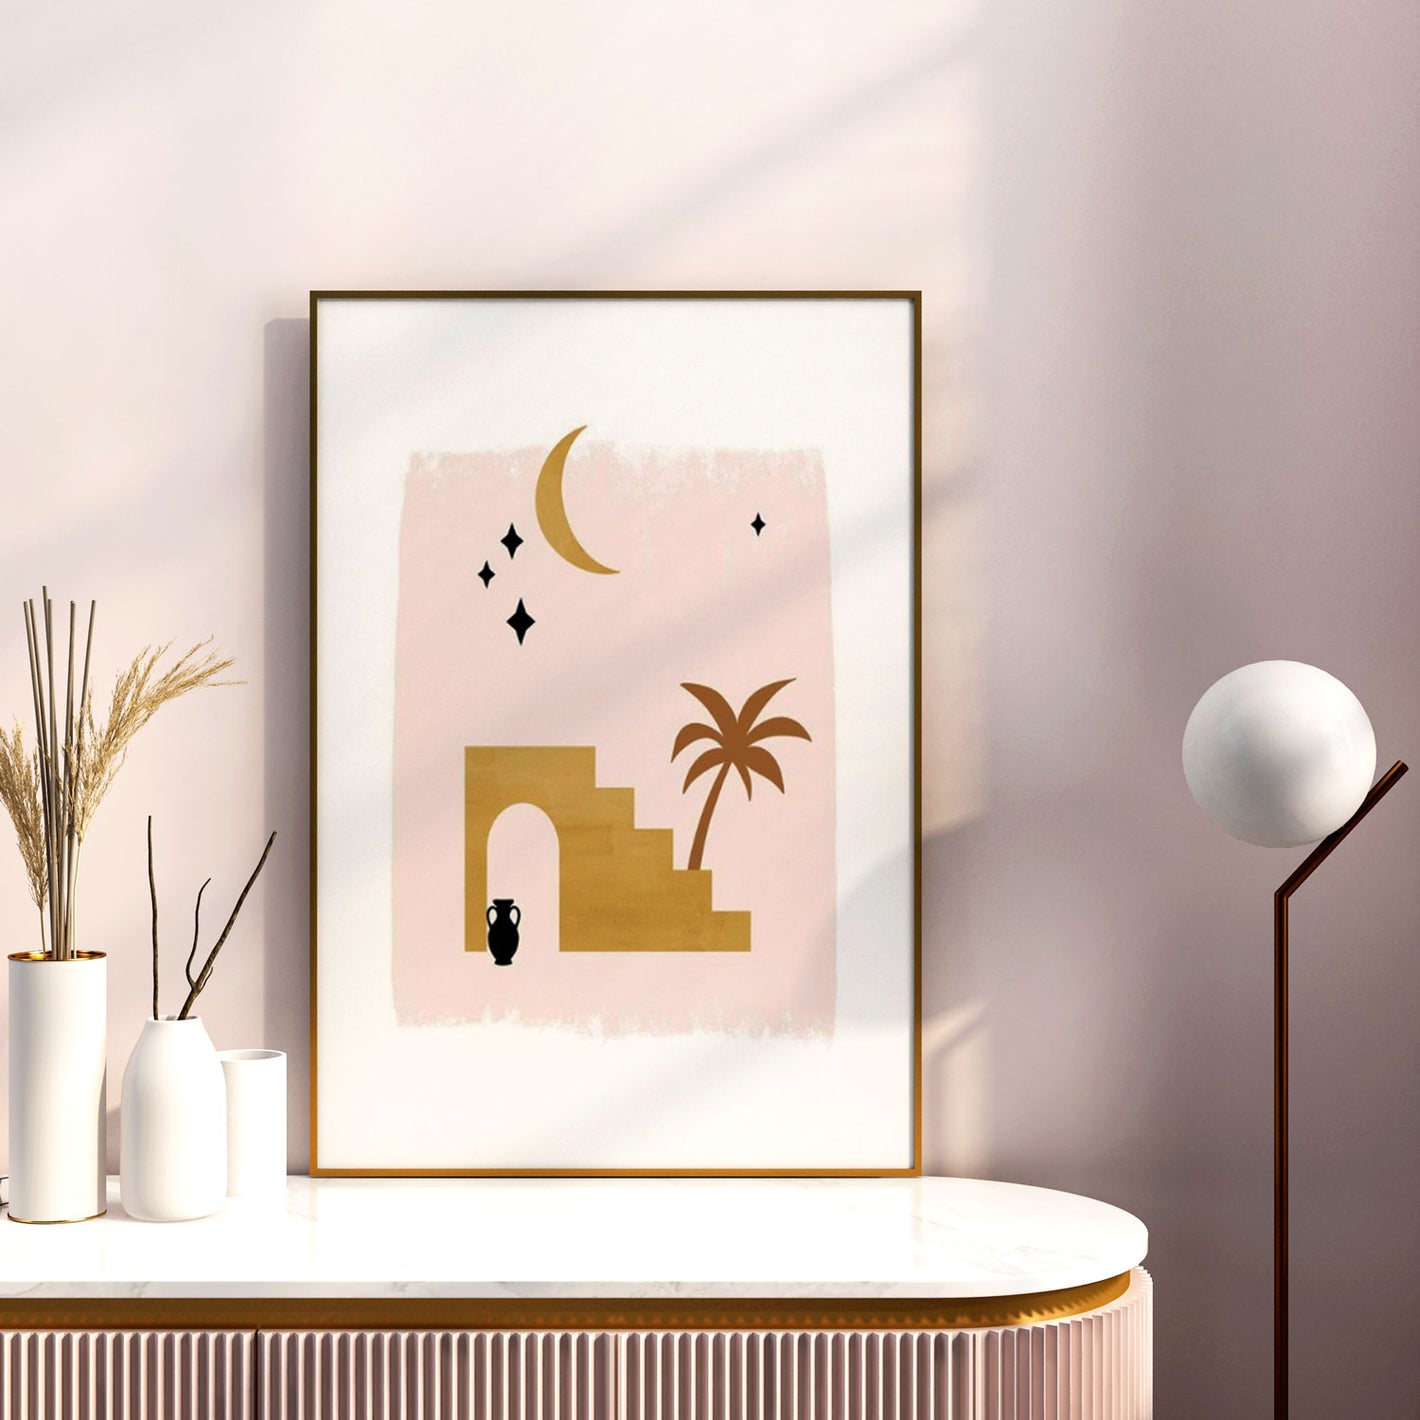 Inspírate con nuestra colección de láminas minimalistas basadas en Marruecos. La imagen principal muestra un paisaje del desierto con la luna en el fondo, en tonos tierra y marrones. Entra para ver y curiosear todas las láminas, cuadros y posters que ten